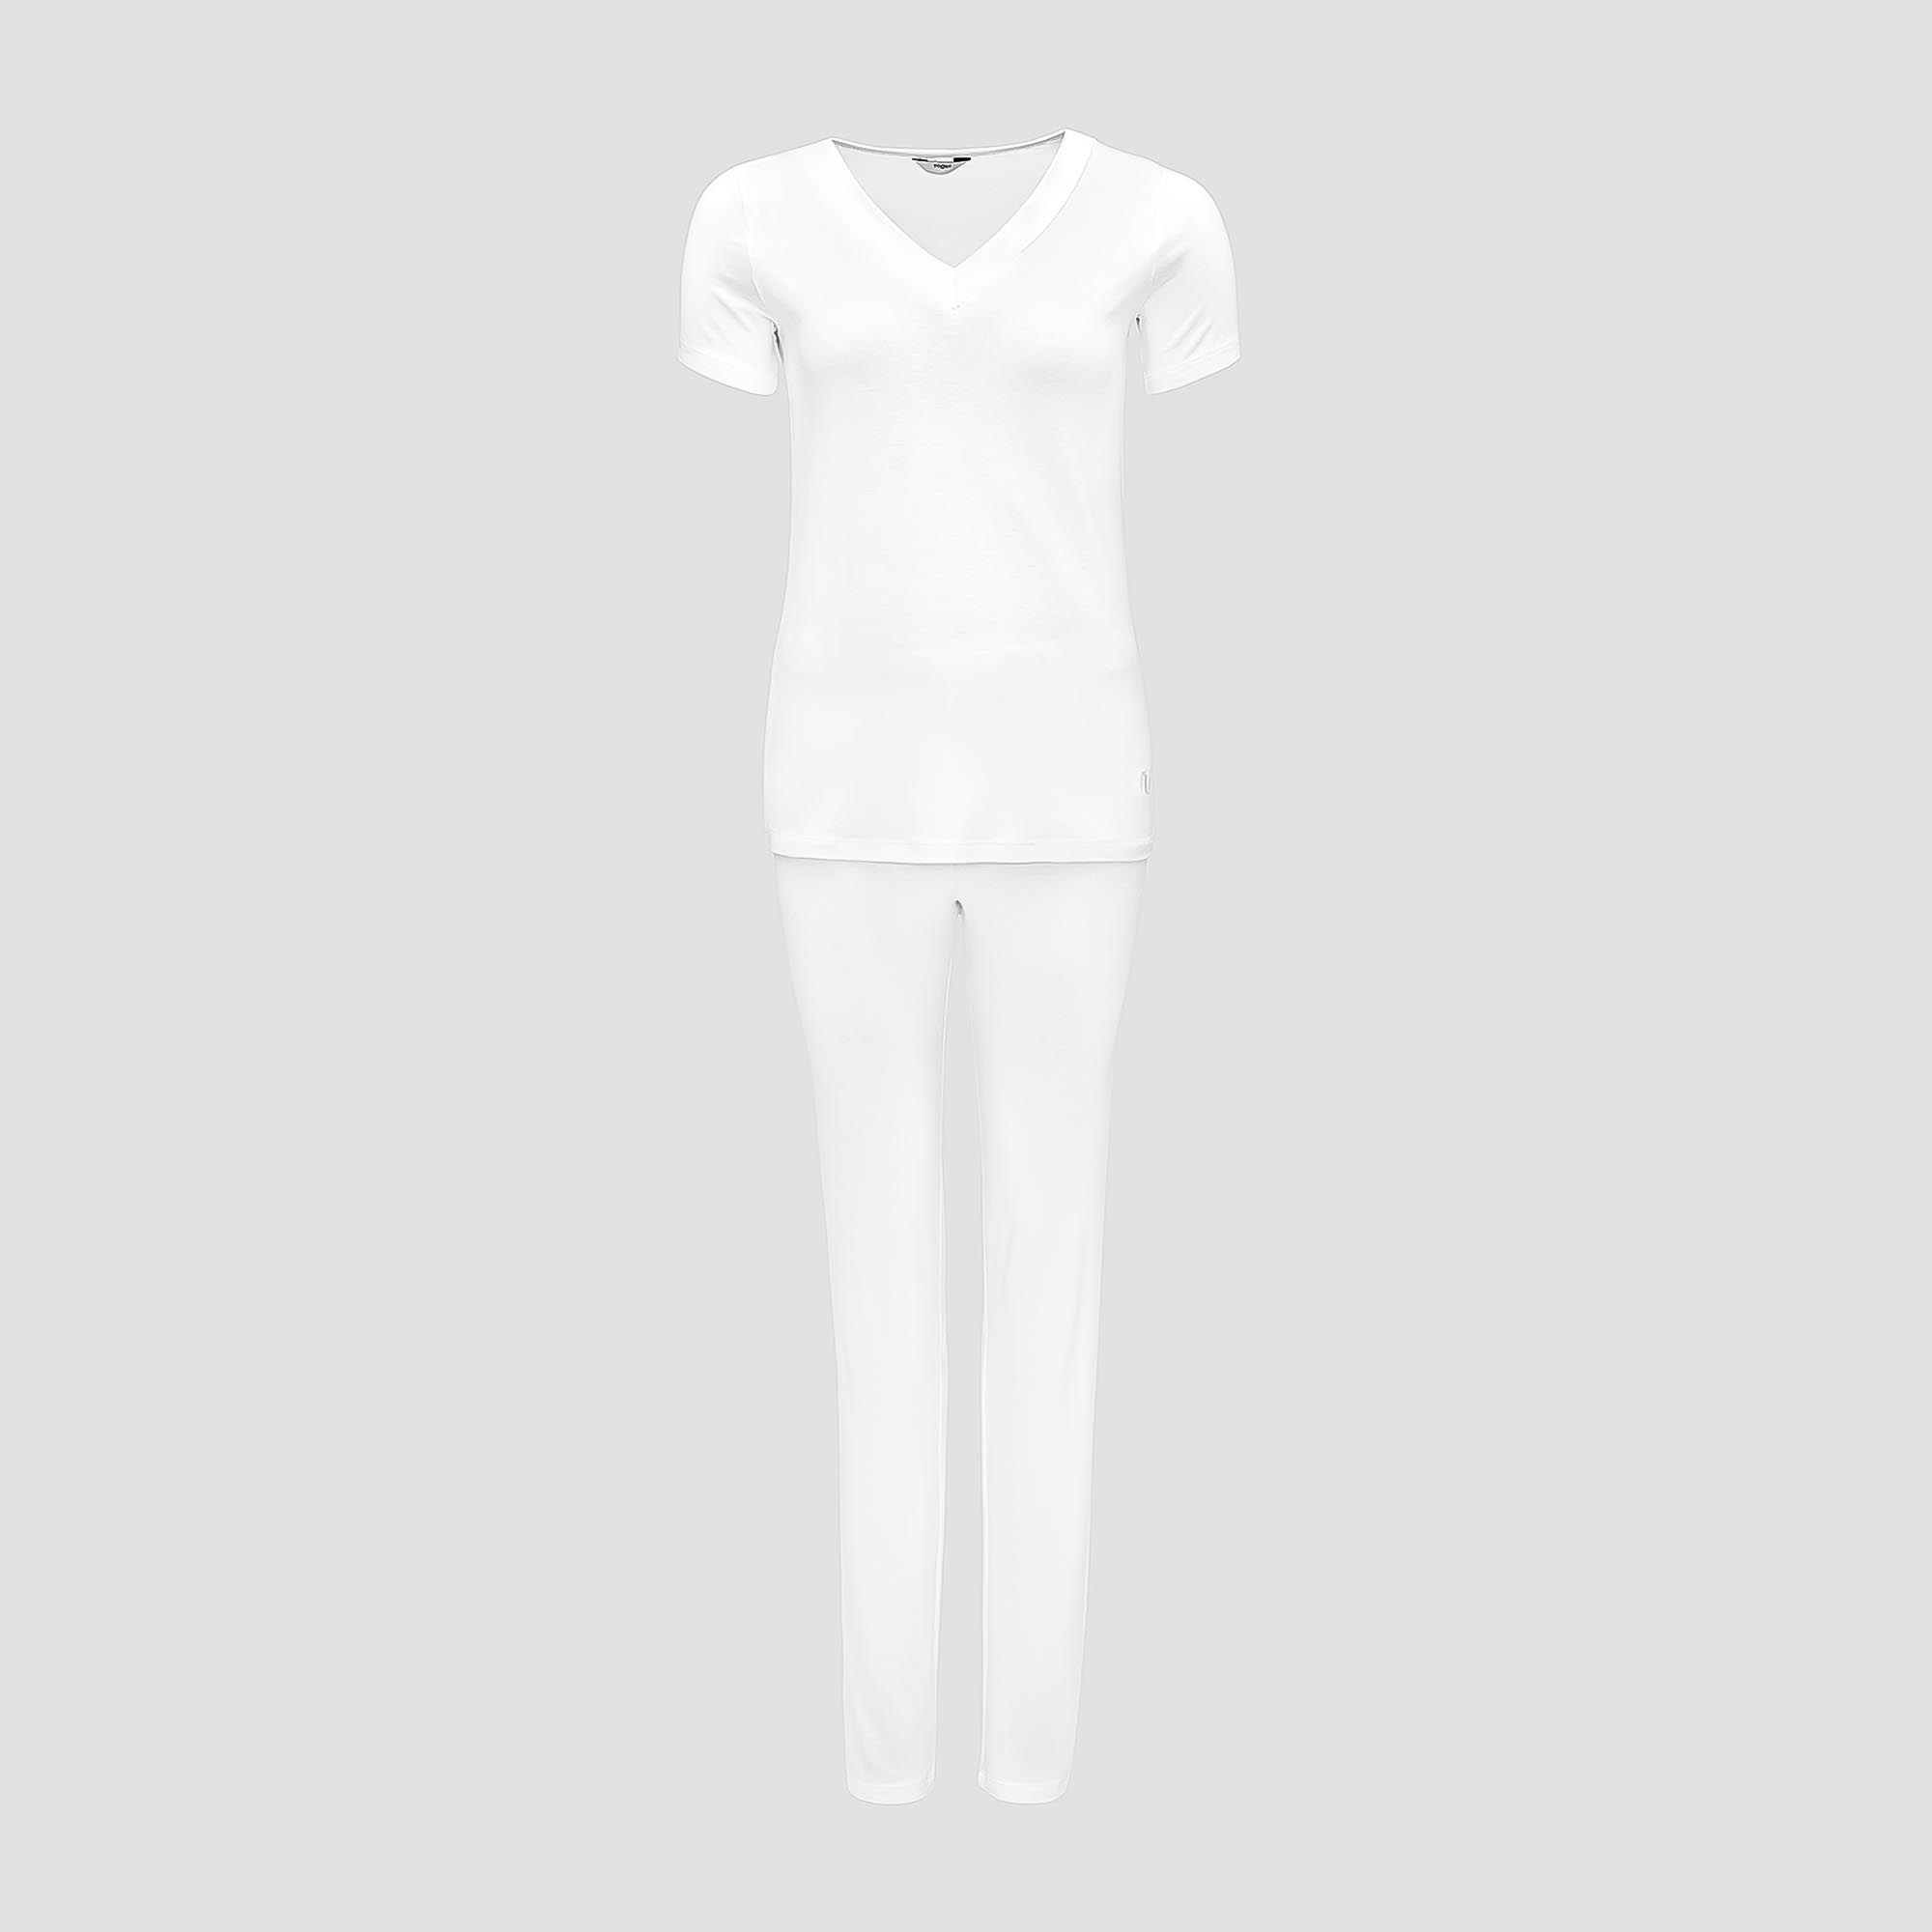 Пижама Togas Ингелла белая женская XXL(52) 2 предмета жен пижама с шортами инь янь белый р 54